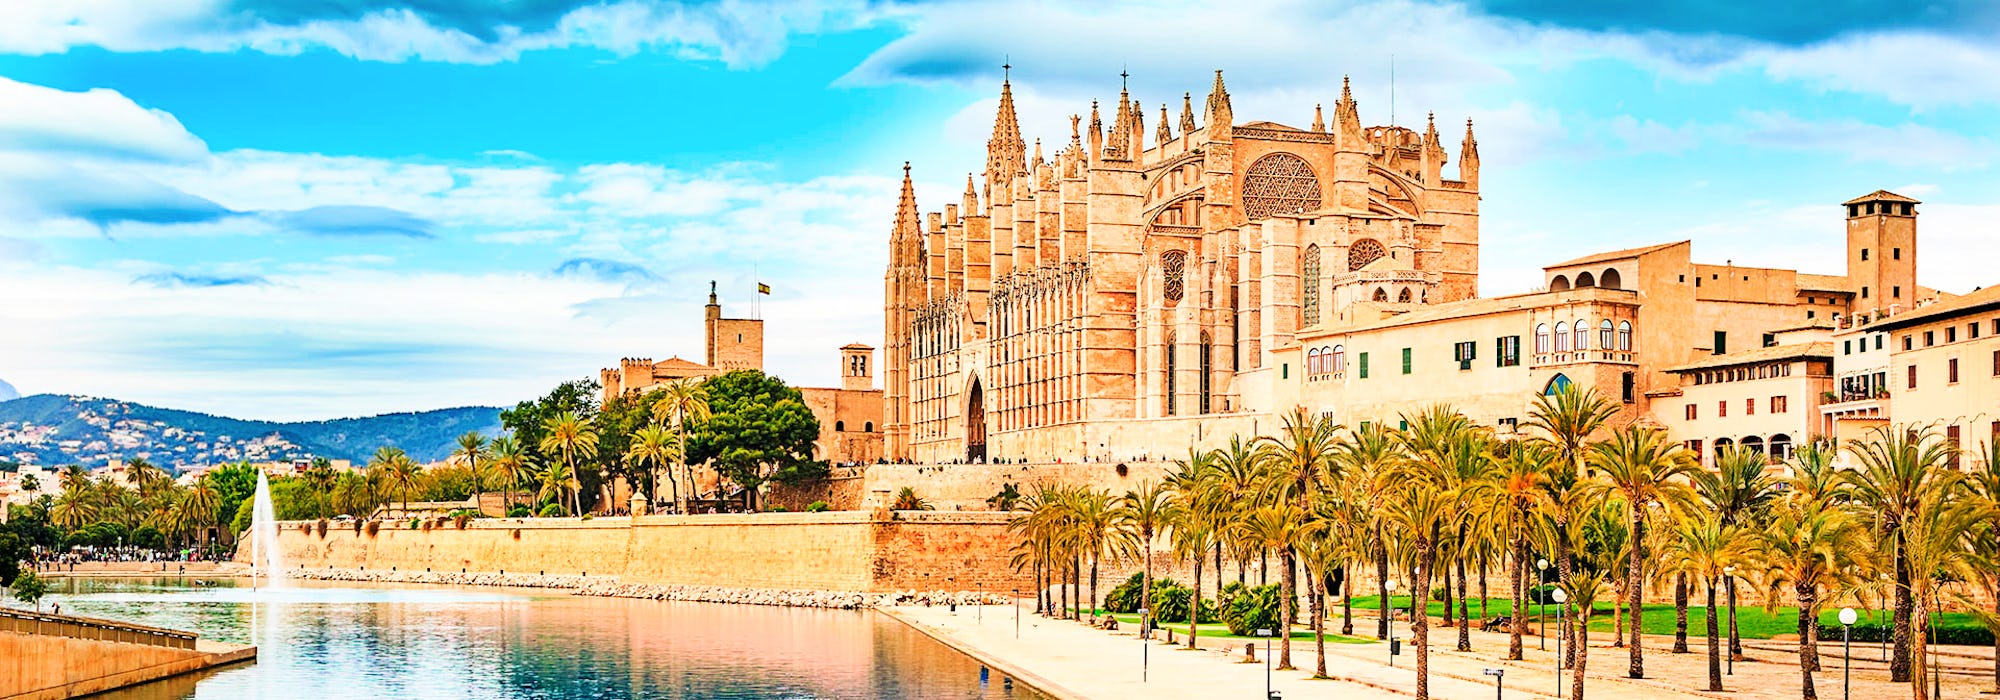 Middellandse Zee Cruise - Palma de Mallorca - Cathedral of Palma de Mallorca